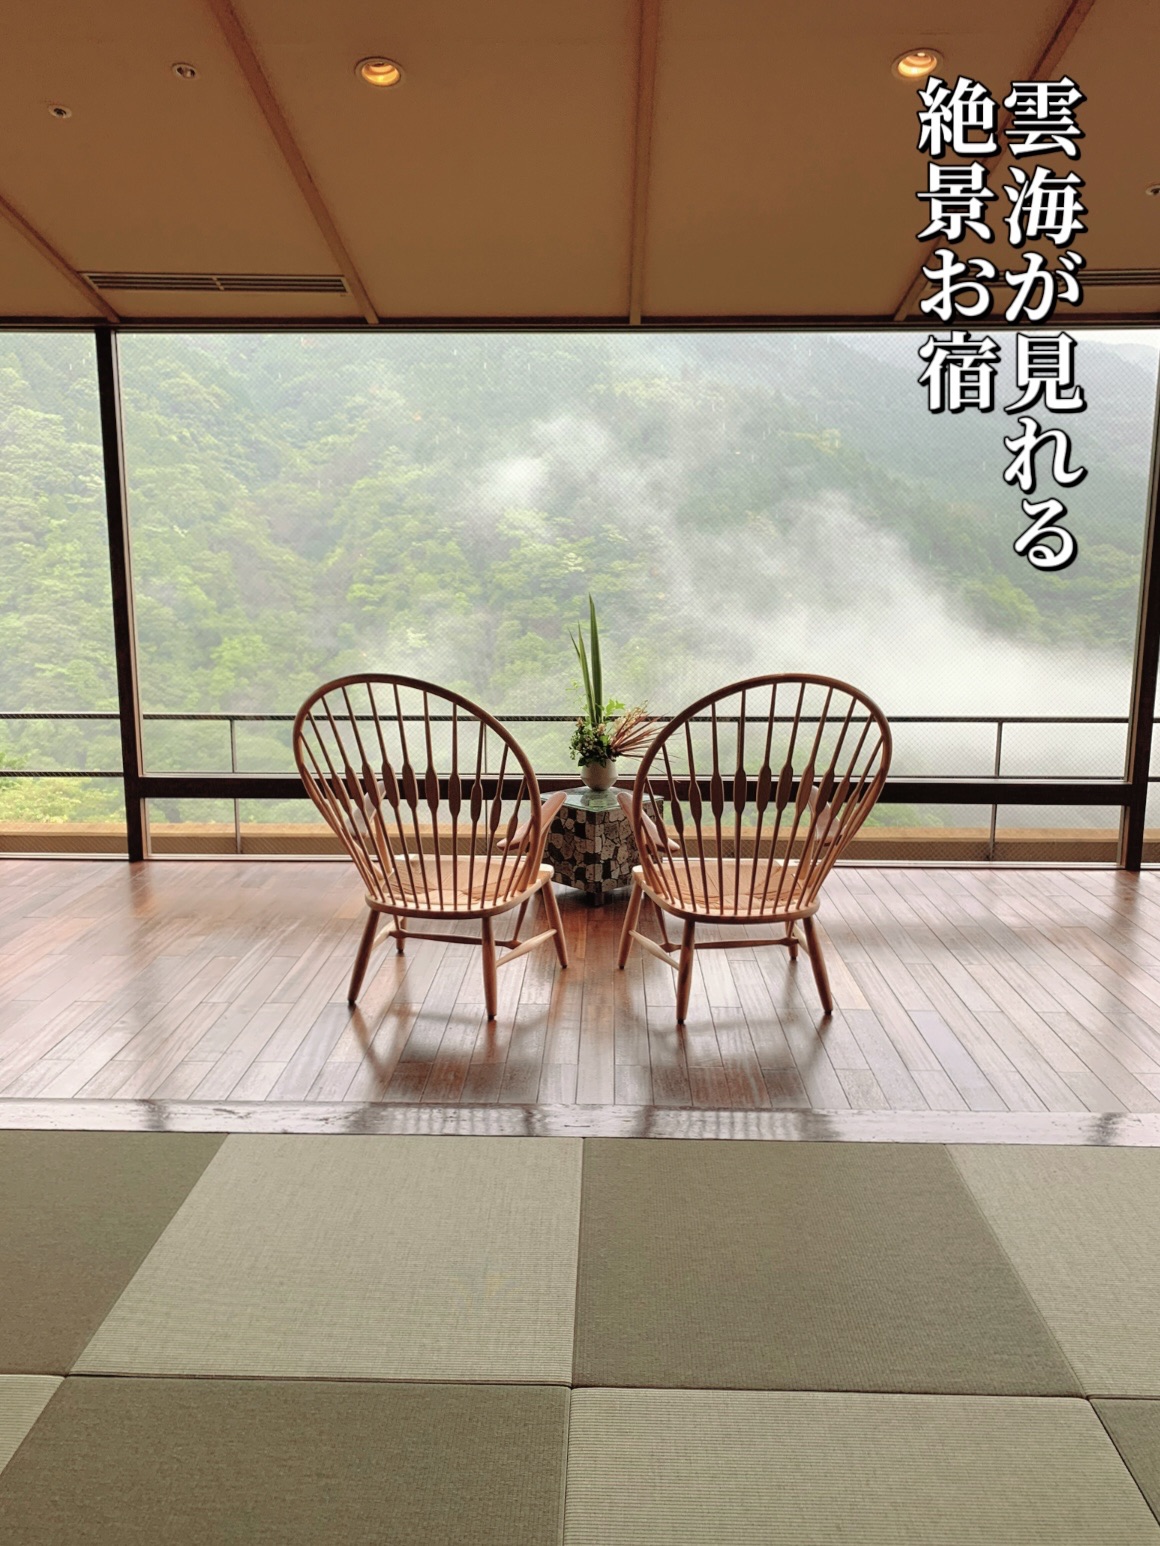 神奈川✼日本最好的预订? !有绝佳景色的无限露天浴池的旅馆🤍